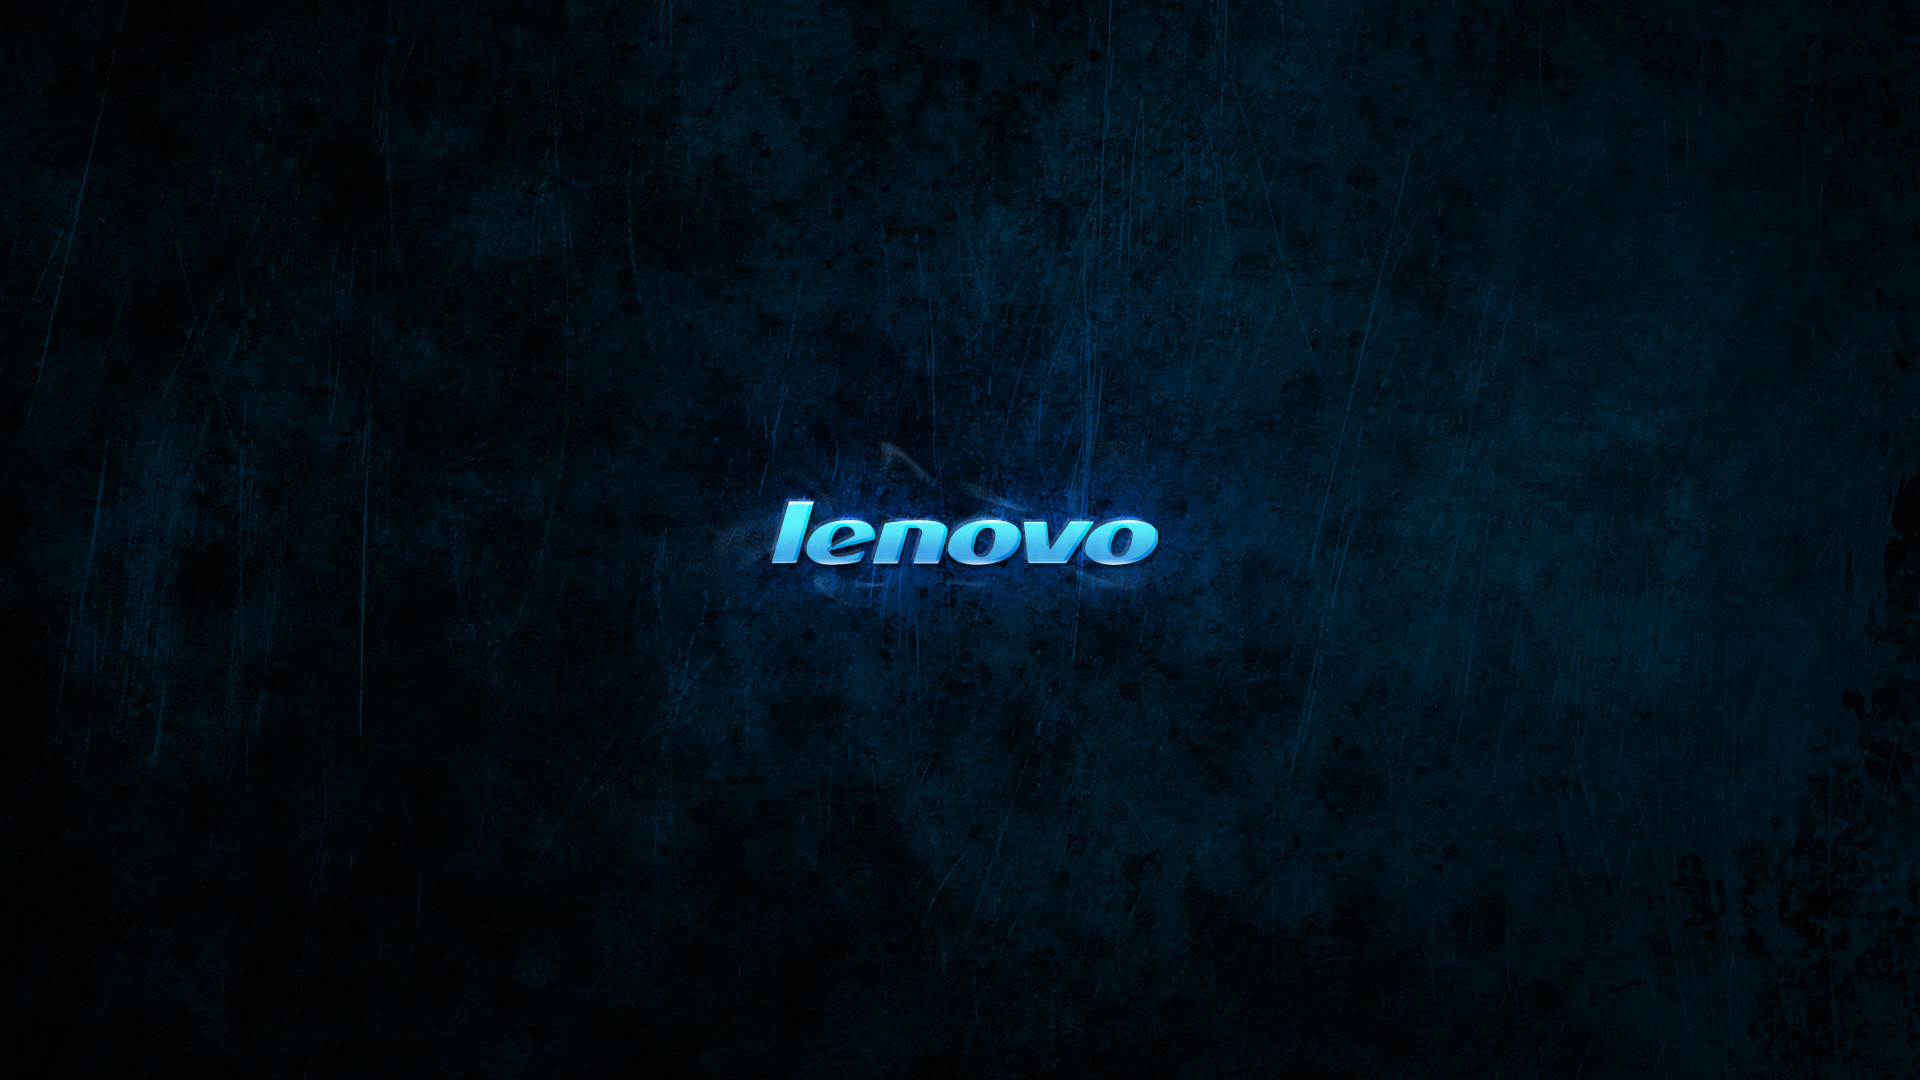 1920x1080 Lenovo Wallpaper Theme 1024Ã768 Lenovo Windows 7 Wallpapers (39 Wallpapers)  | Adorable